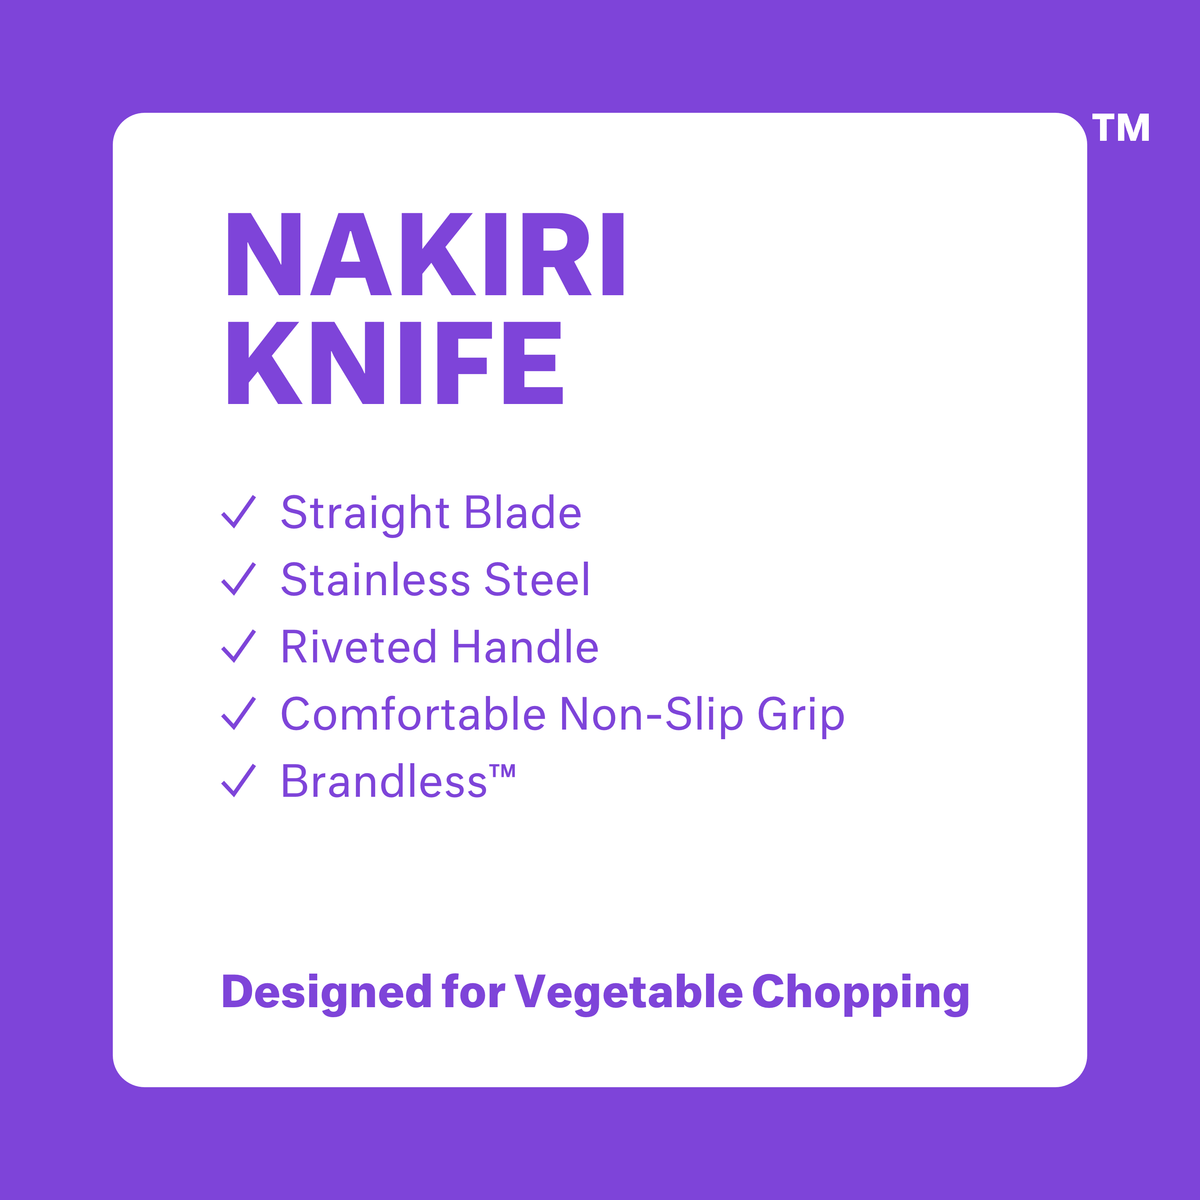 Nakiri Knife. Straight blade. Stainless steel. Riveted handle. Comfortable non-slip grip. Brandless. Designed for vegetable chopping.